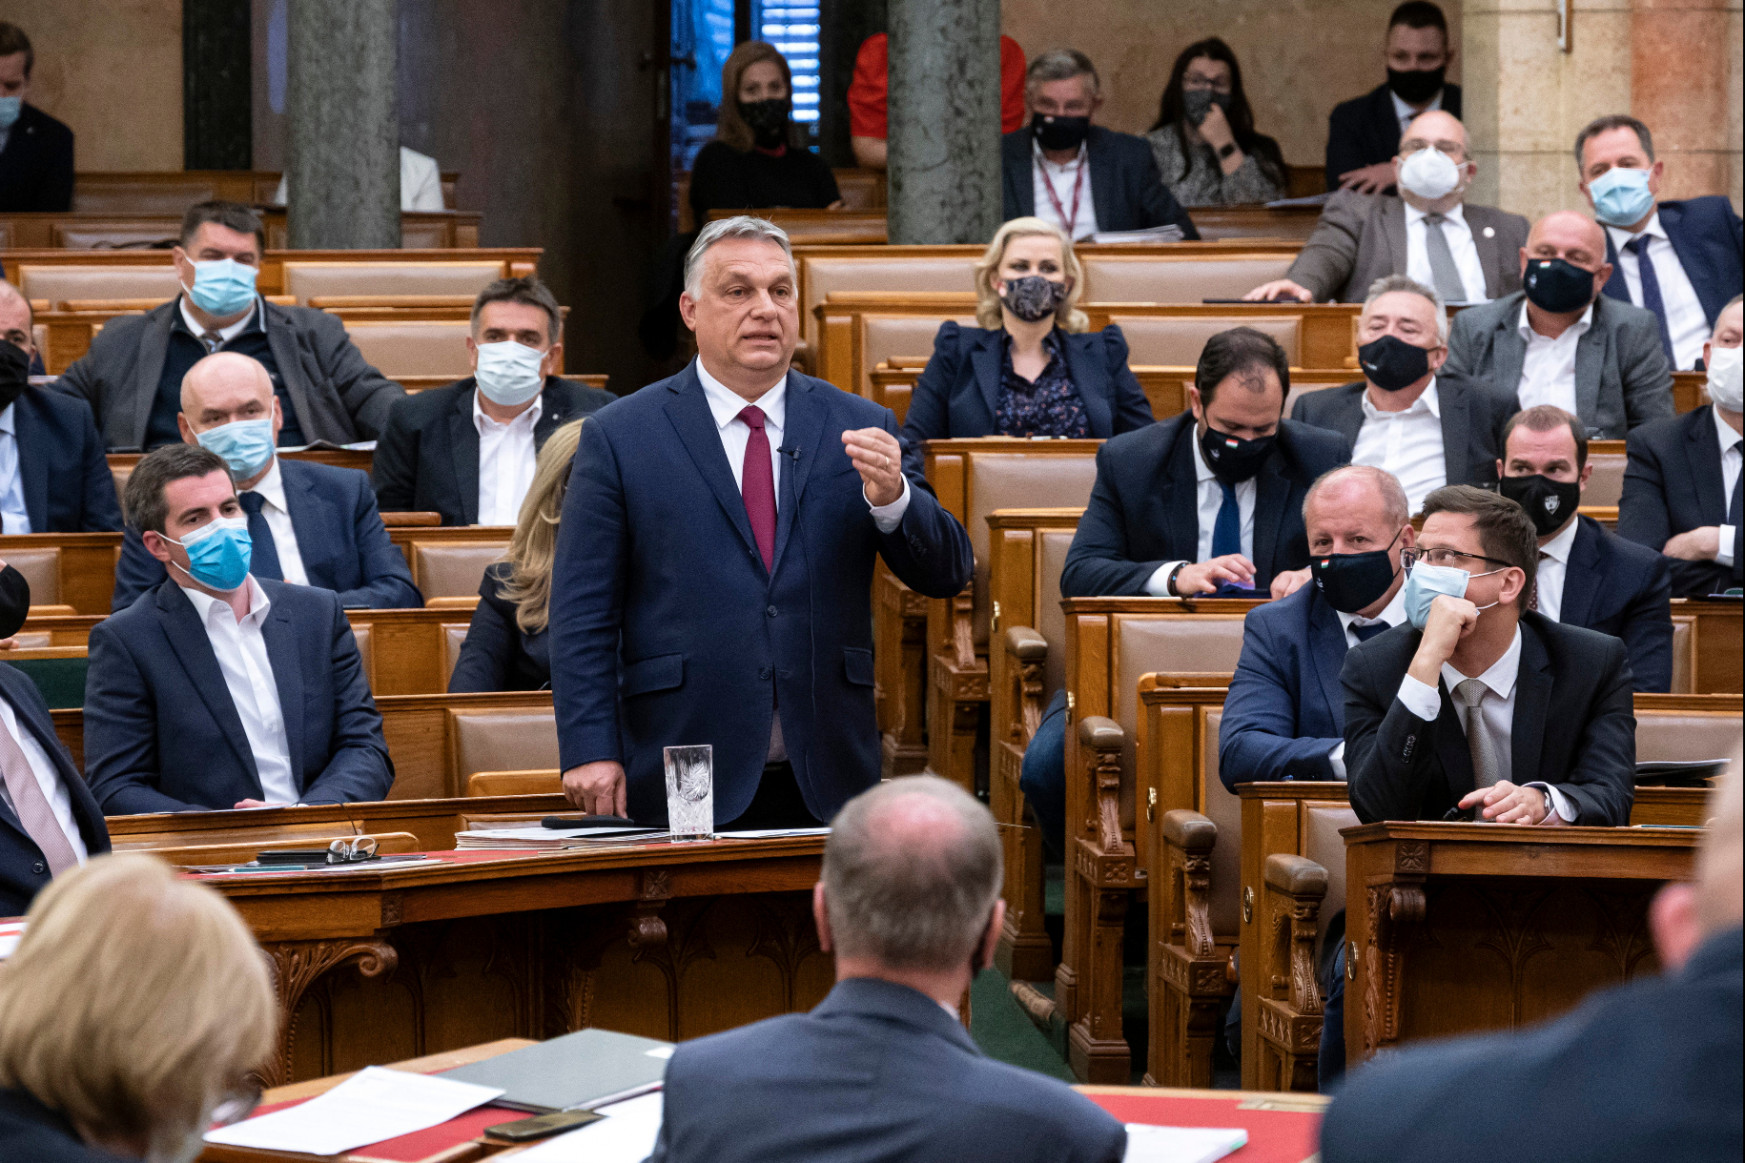 Több ezermilliárdnyi közvagyon alapítványokba szervezését szavazta meg a Fidesz, elkezdődött a hatalomátmentés